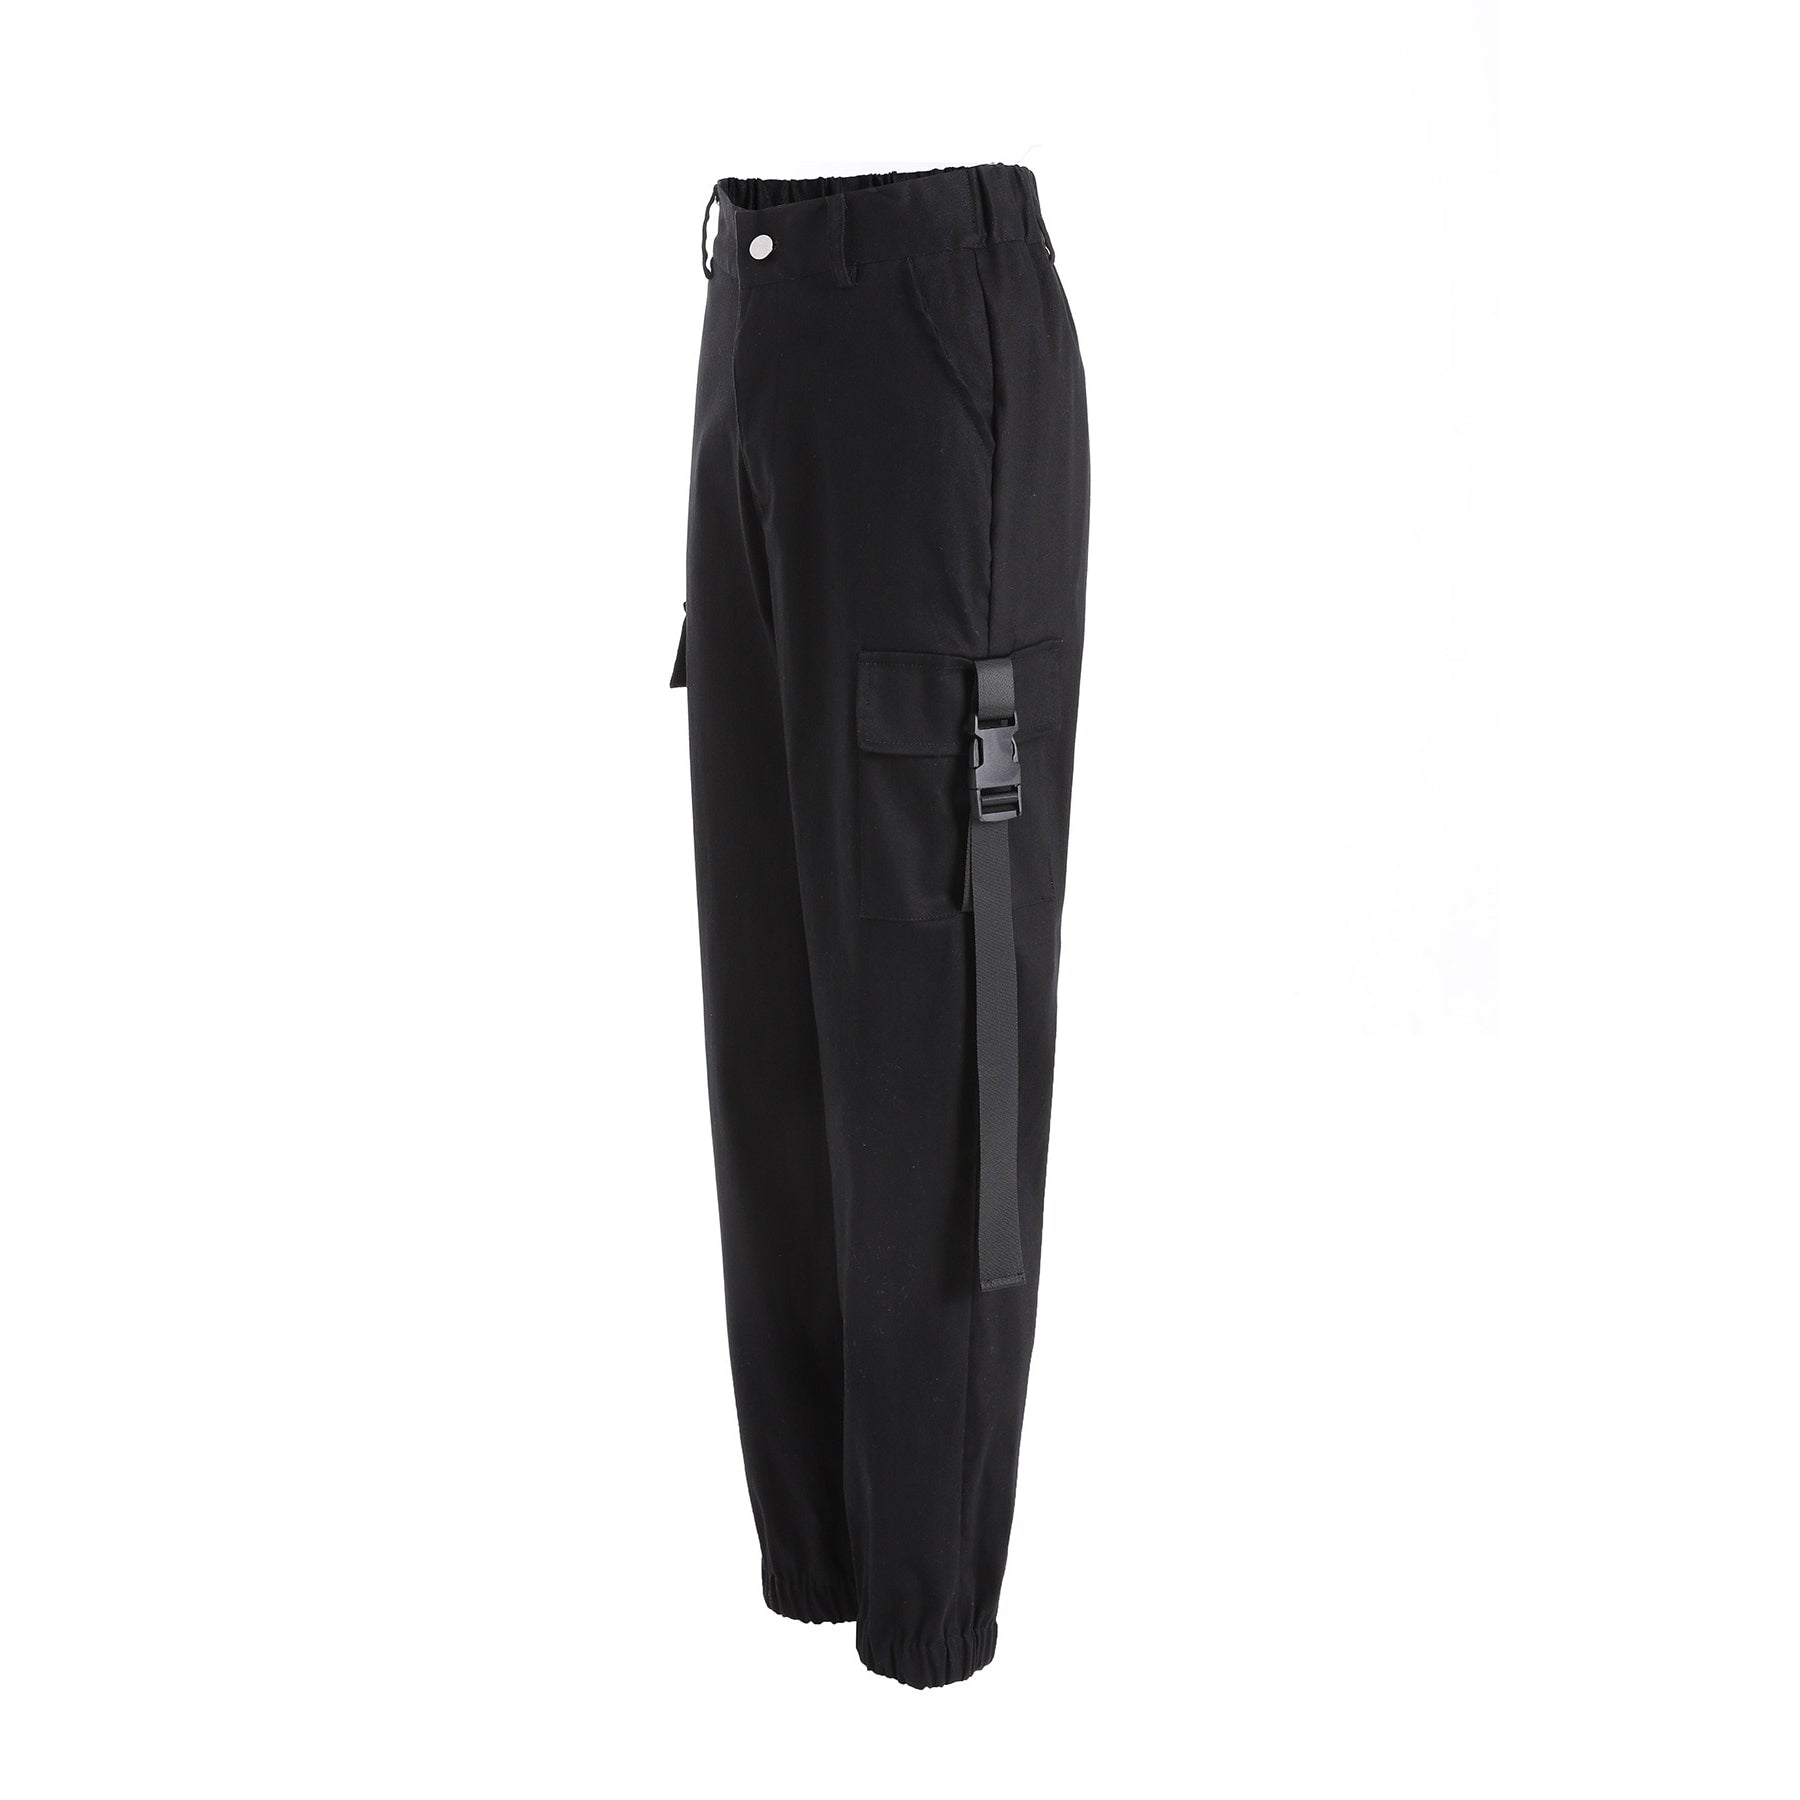 Women Cargo Pants / Joggers Black High Waist Loose Female Trousers in Rock Style - HARD'N'HEAVY